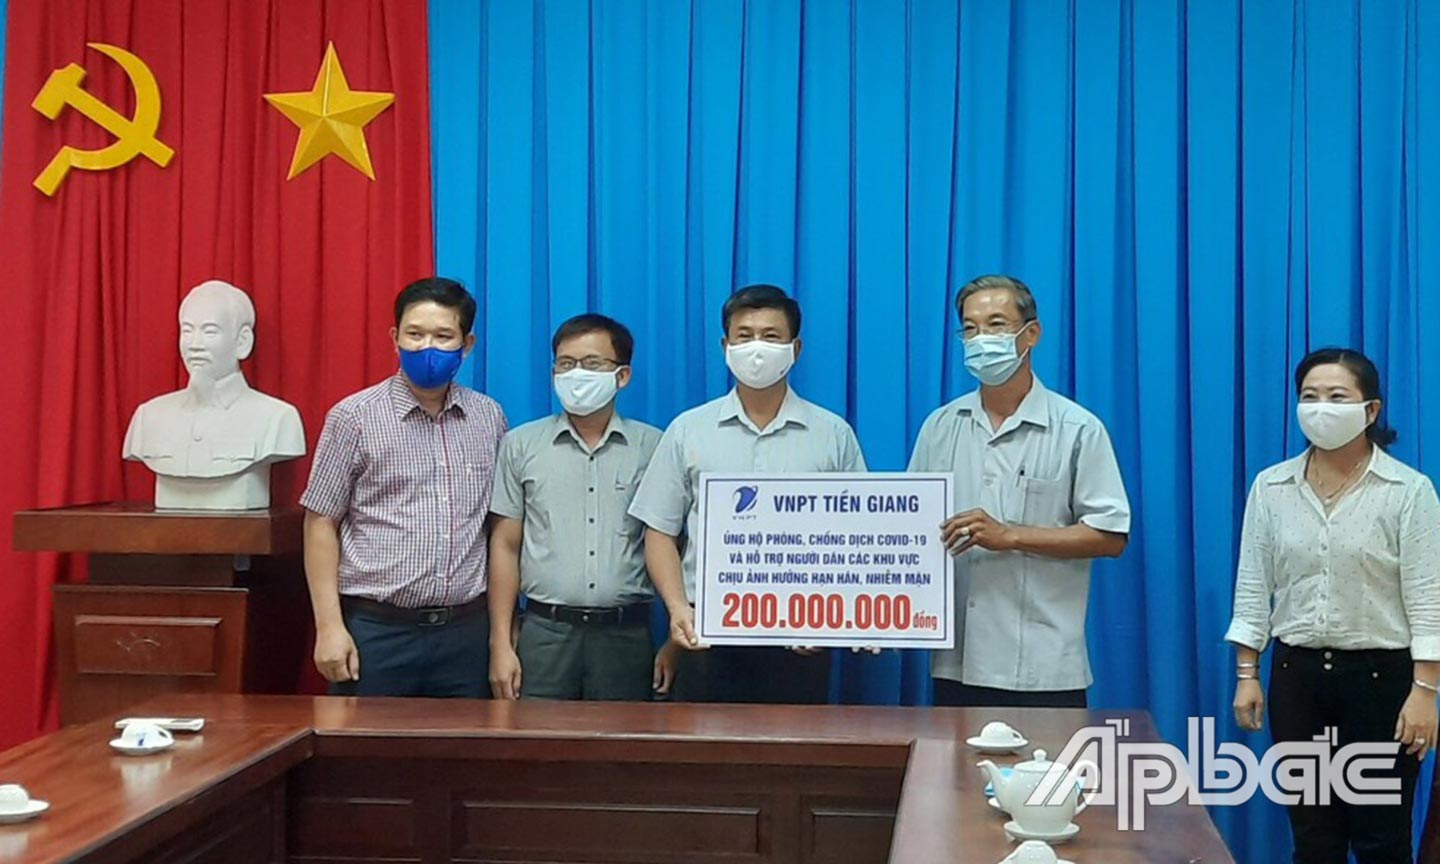 VNPT Tiền Giang ủng hộ 200 triệu đồng cho công tác phòng, chống dịch Covid-19 và hỗ trợ người dân bị ảnh hưởng hạn, mặn.                                                                 Ảnh: VĂN THẢO